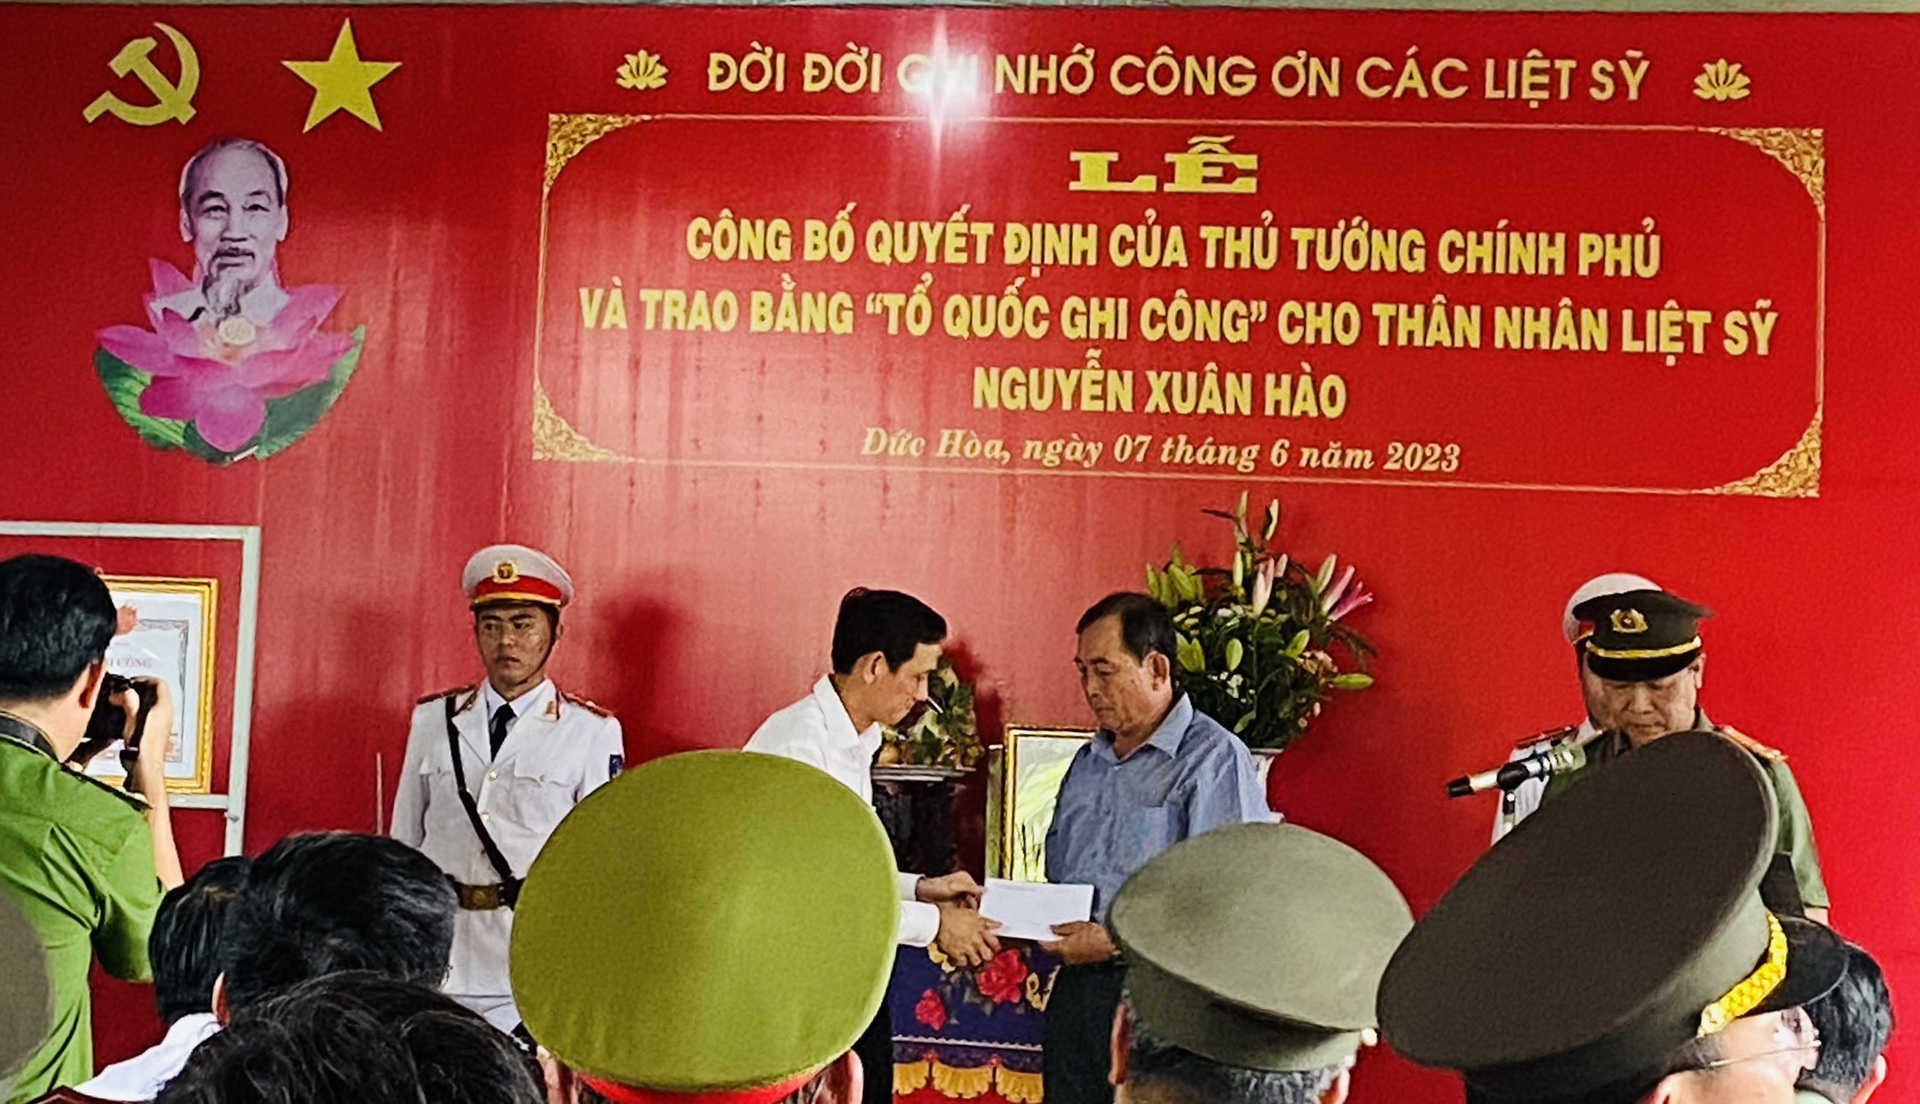 Trao bằng Tổ quốc ghi công cho liệt sĩ, Trung tá CSGT Nguyễn Xuân Hào - 1